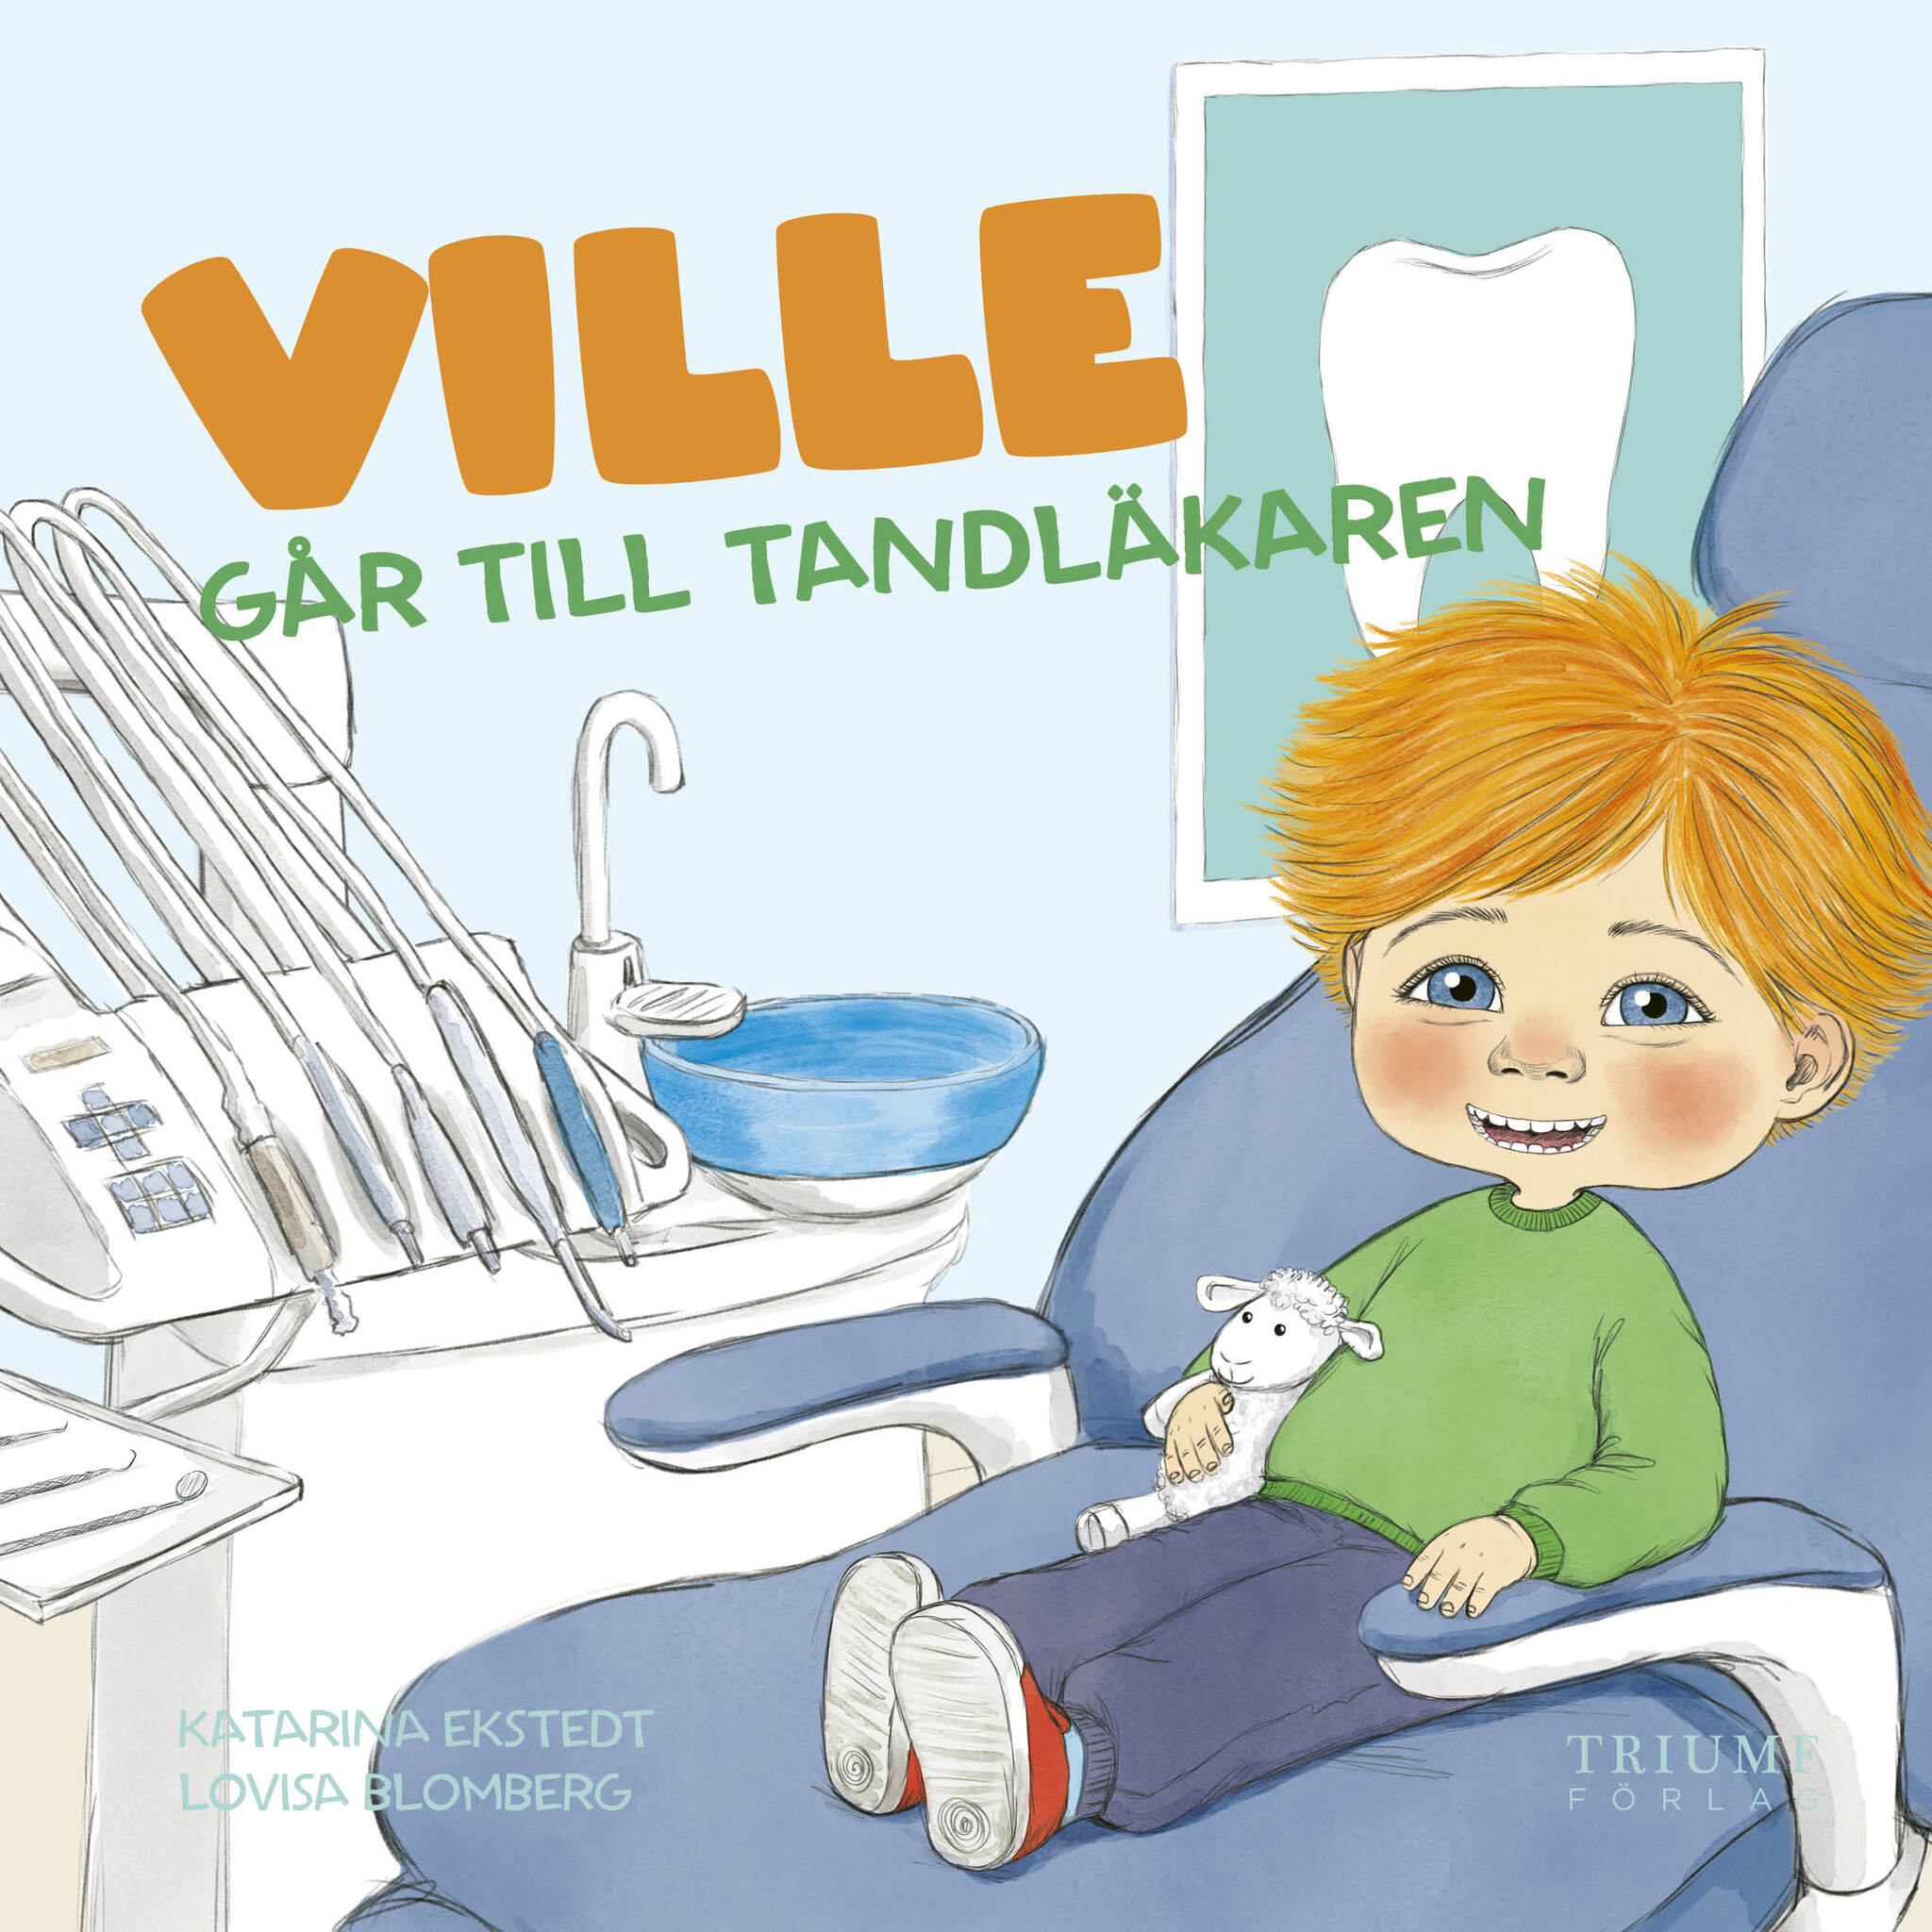 "Ville går till tandläkaren" Av Katarina Ekstedt